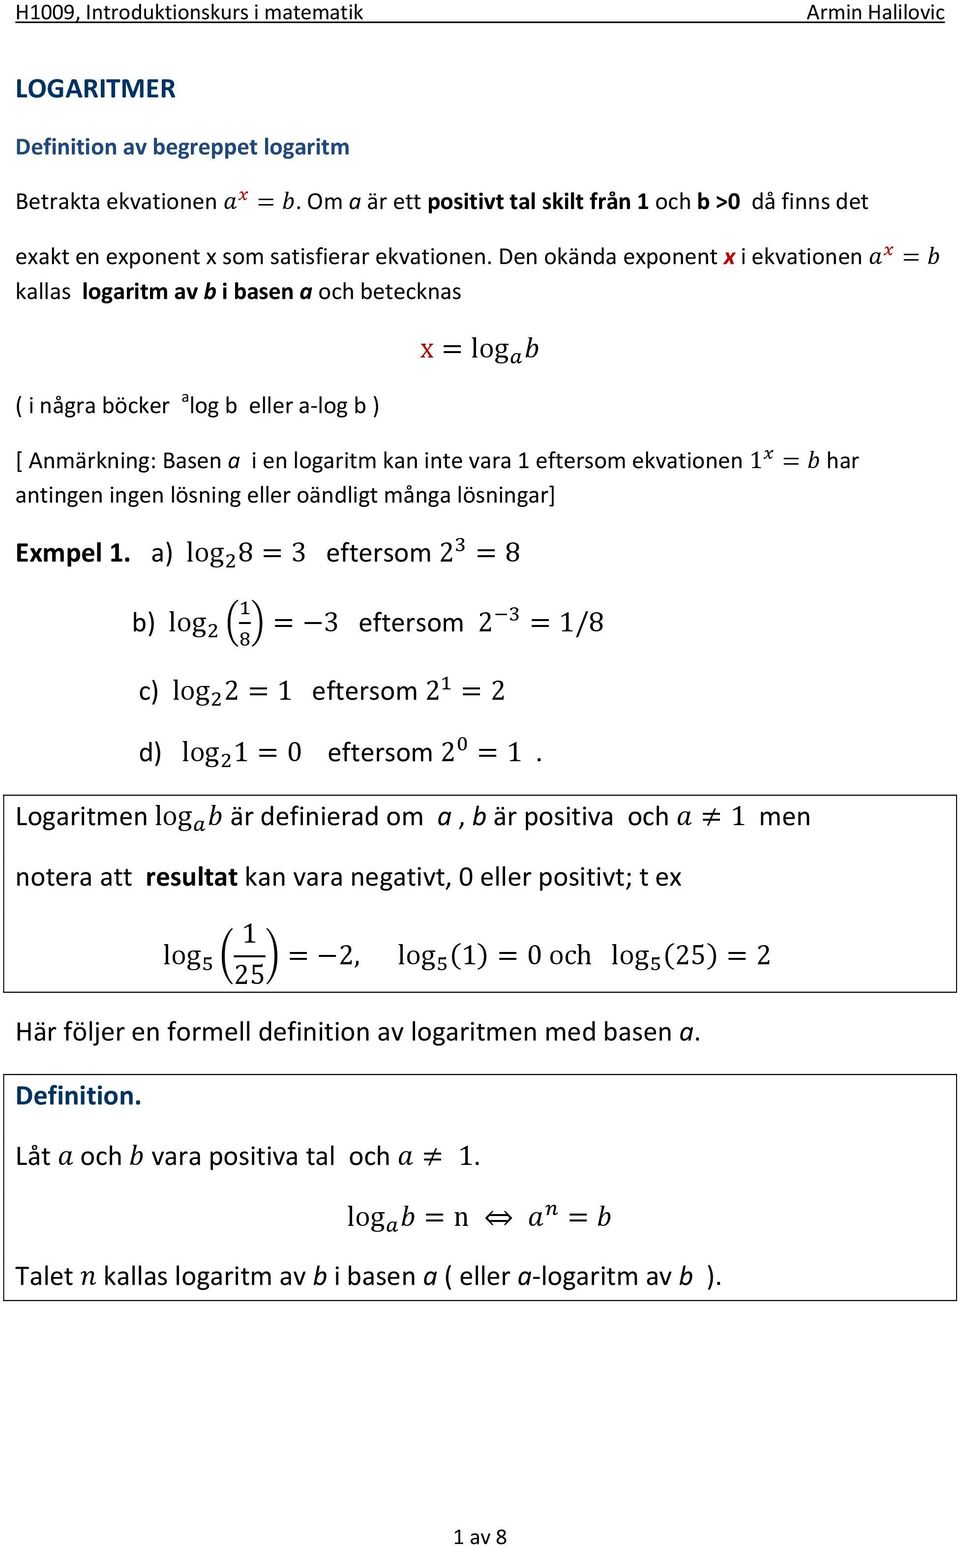 ekvationen 1 = har antingen ingen lösning eller oändligt många lösningar] Exmpel 1. a) log 8=3 eftersom 2 =8 b) log = 3 eftersom 2 =1/8 c) log 2=1 eftersom 2 =2 d) log 1=0 eftersom 2 =1.